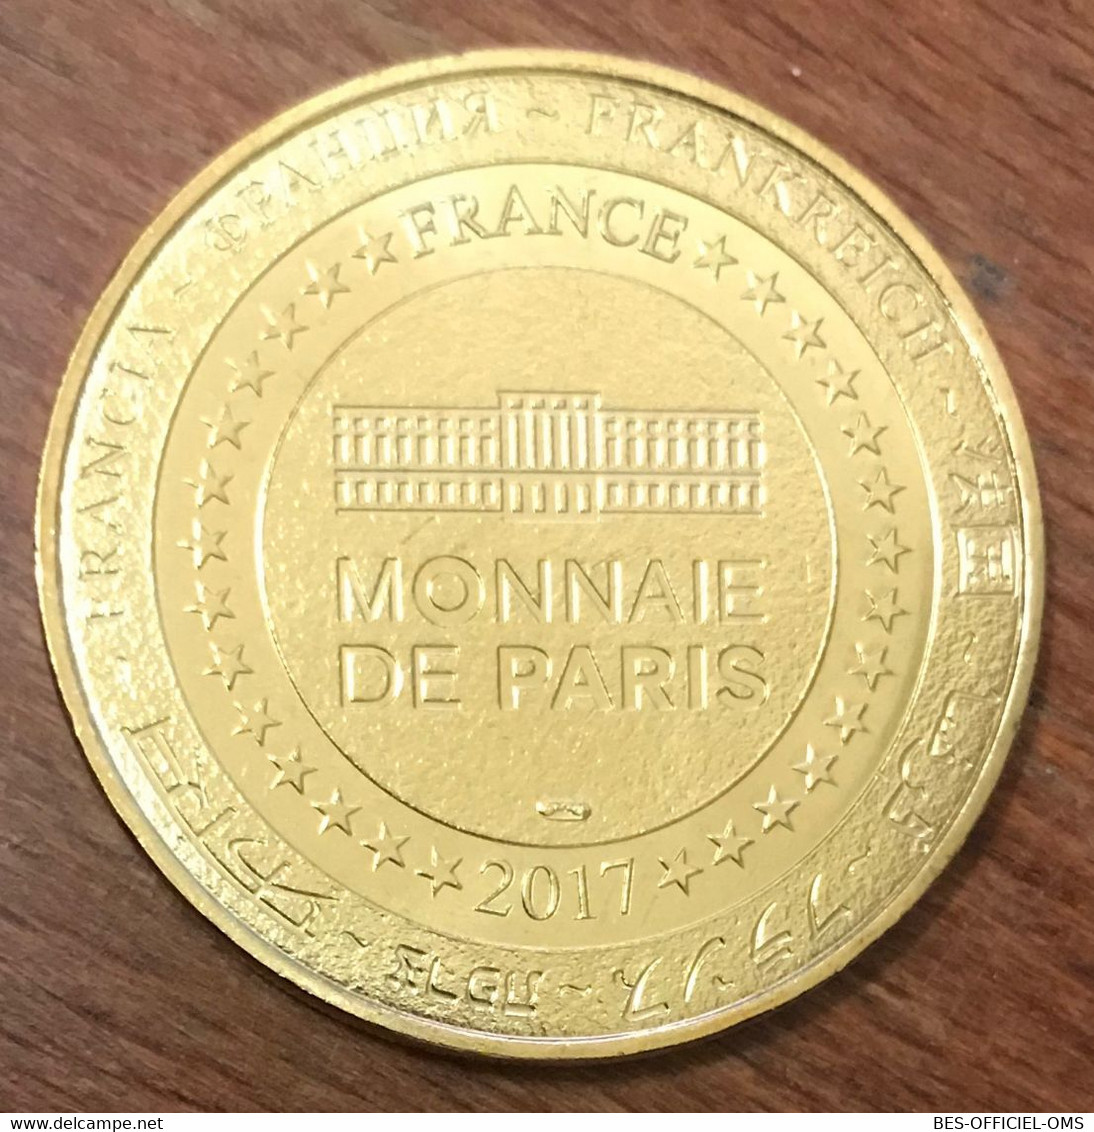 07 PEAUGRES LES LOUPS MDP 2017 MINI MÉDAILLE SOUVENIR MONNAIE DE PARIS JETON TOURISTIQUE TOKEN MEDALS COINS - 2017